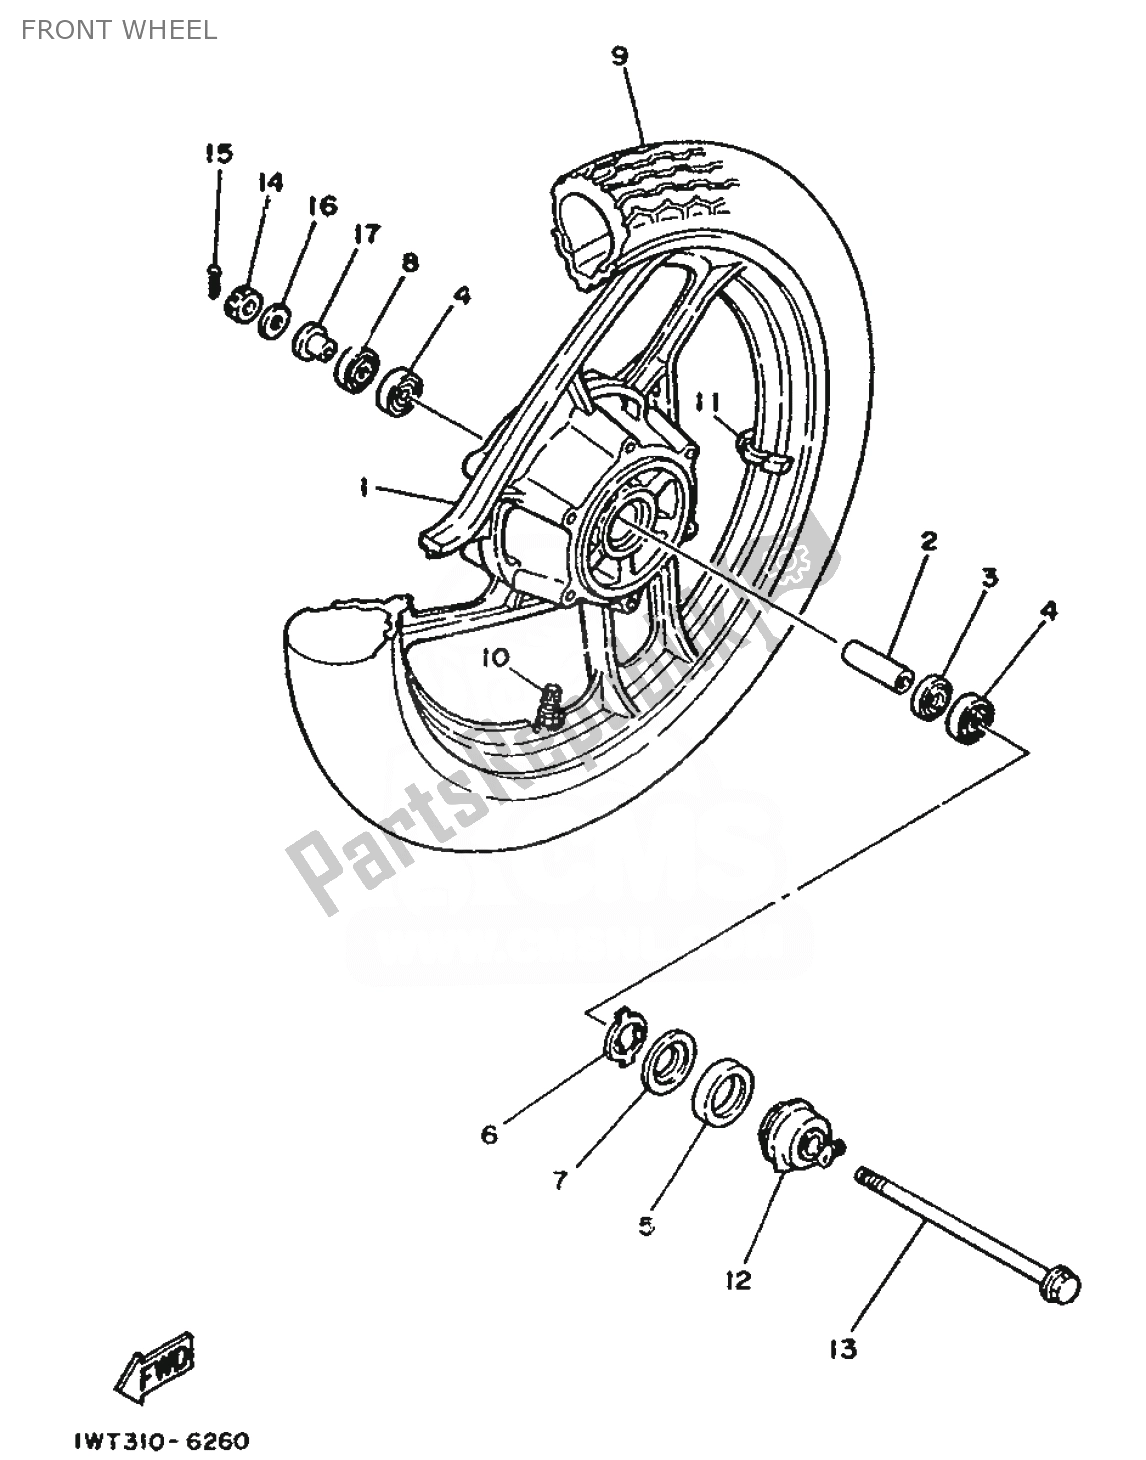 Alle onderdelen voor de Voorwiel van de Yamaha RD 350 1991